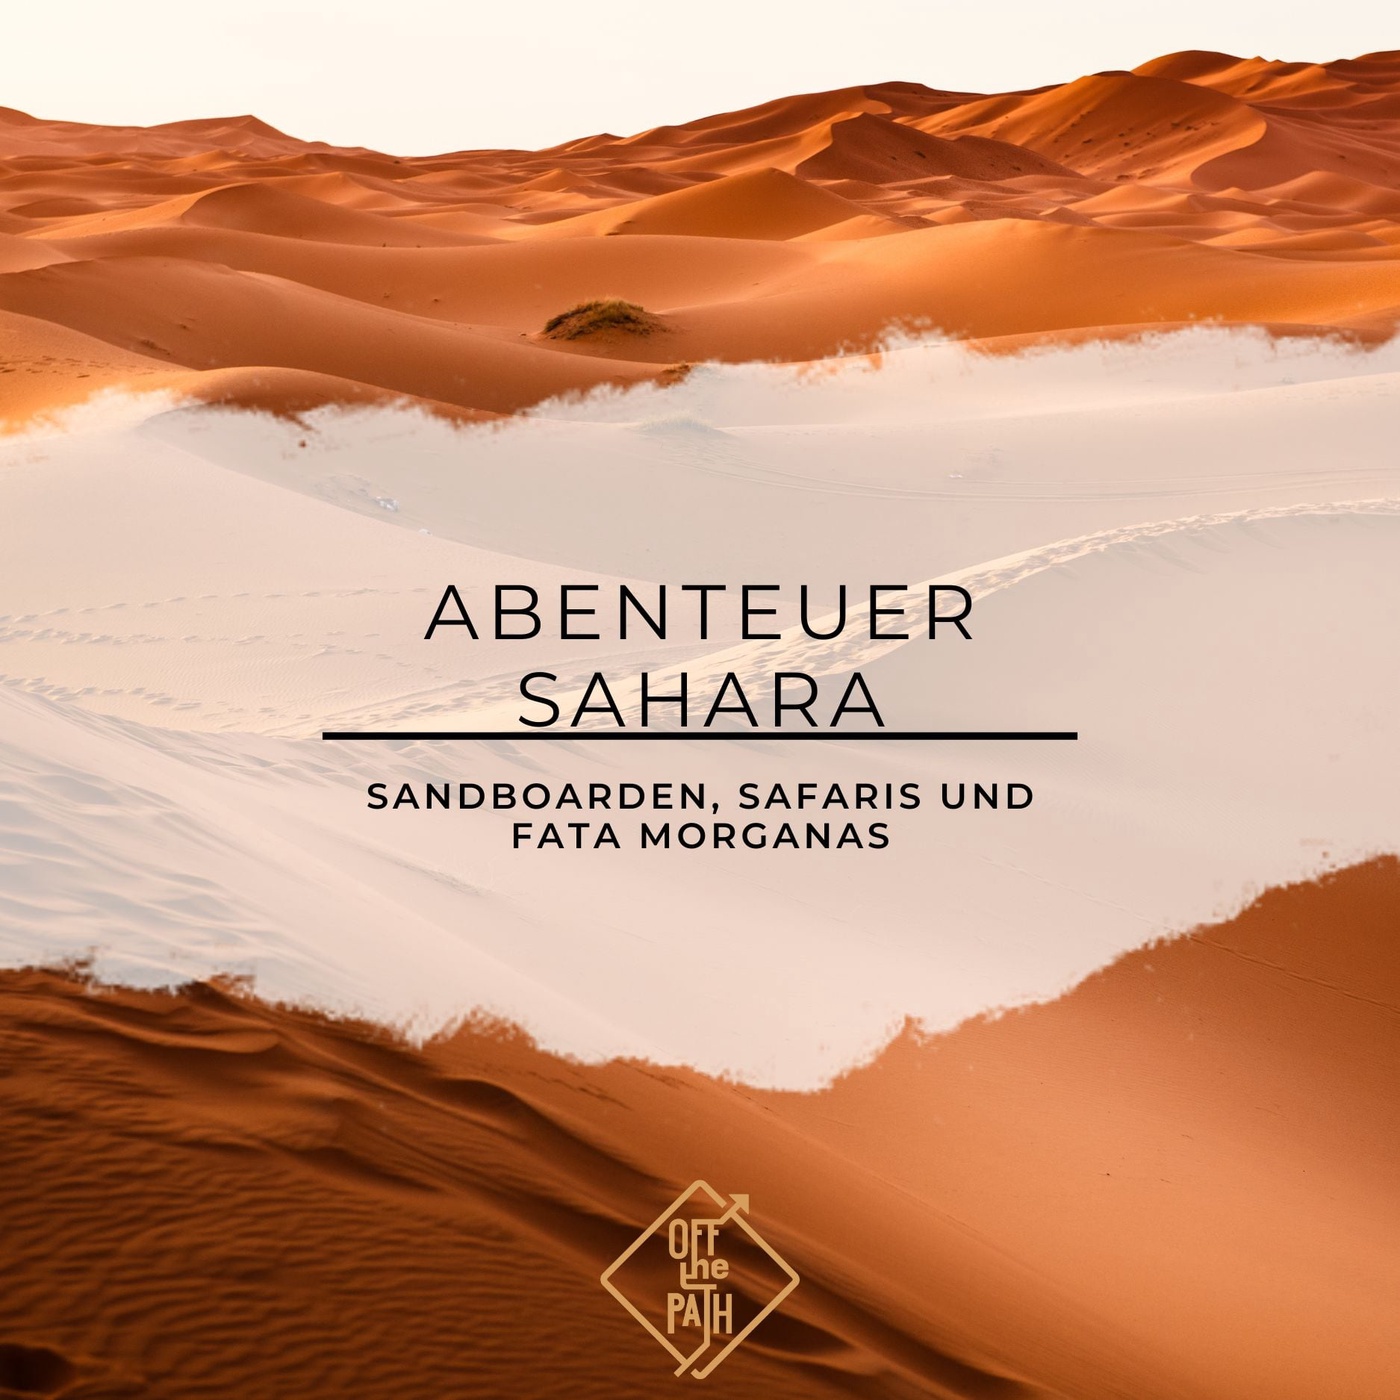 Abenteuer Sahara: Sandboarden, Safaris und Fata Morganas